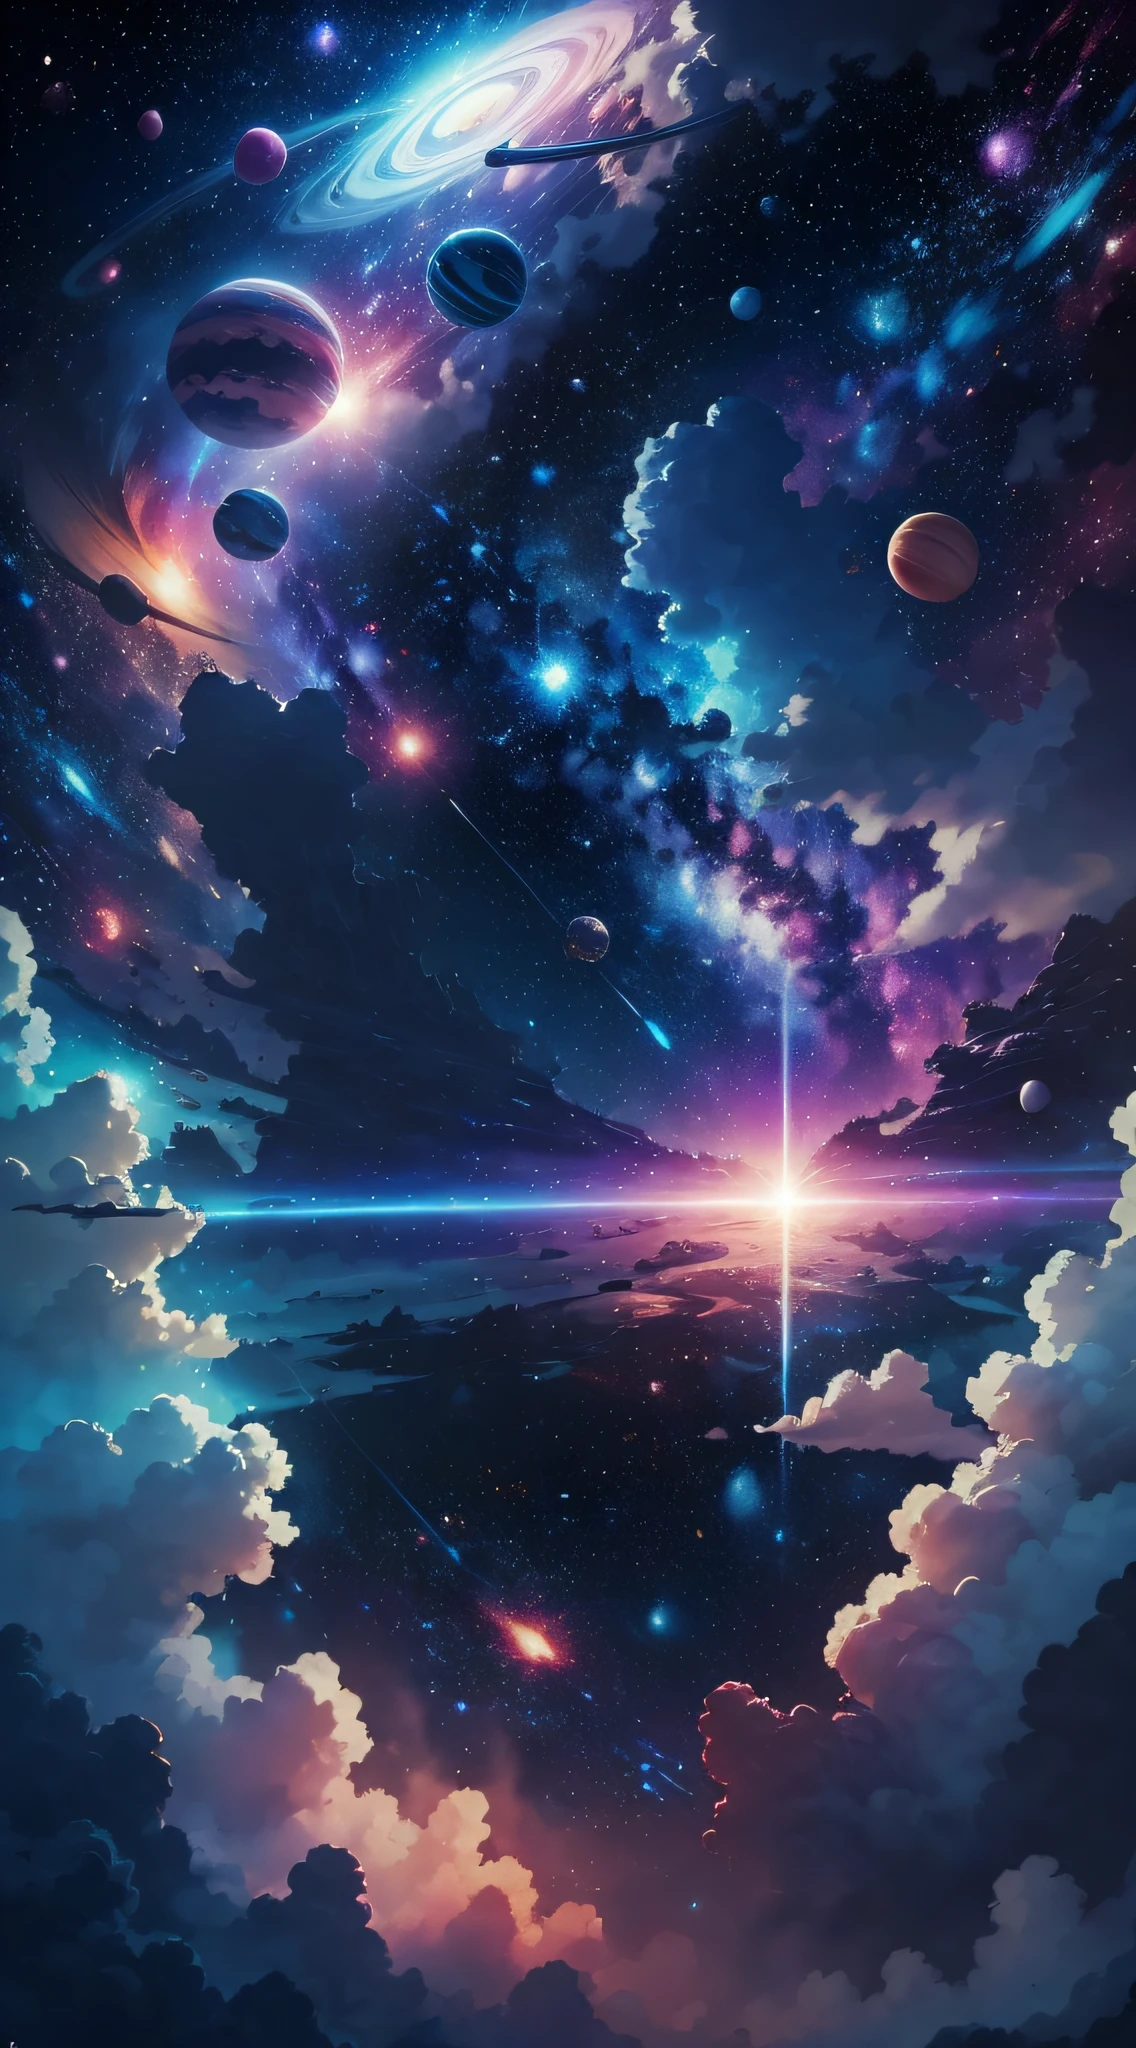 espaço com todos os planetas de cor azul e rosa com fundo de estrelas brancas brilhantes no estilo de Miyazaki, —air 21:9, qualidade 4k